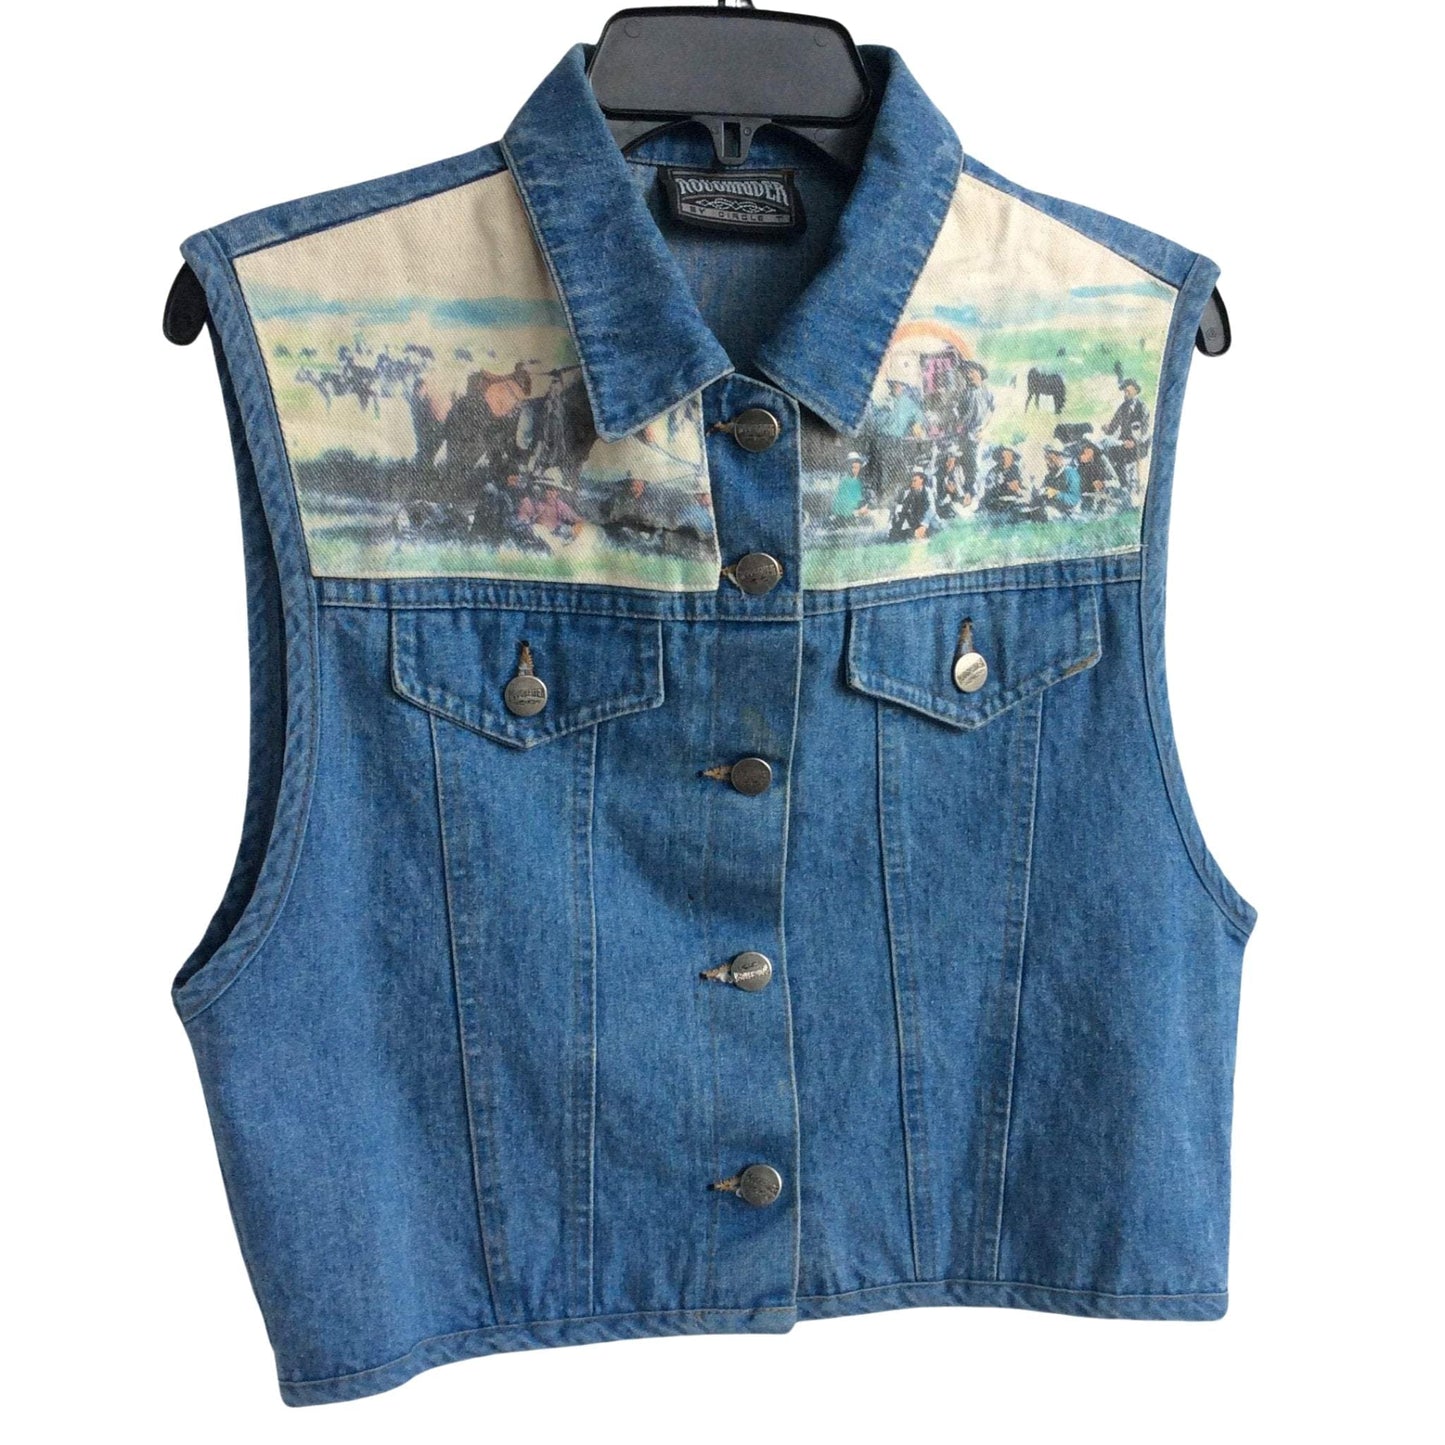 Vintage Cowboy Novelty Vest Small / Blue / Vintage 1980s